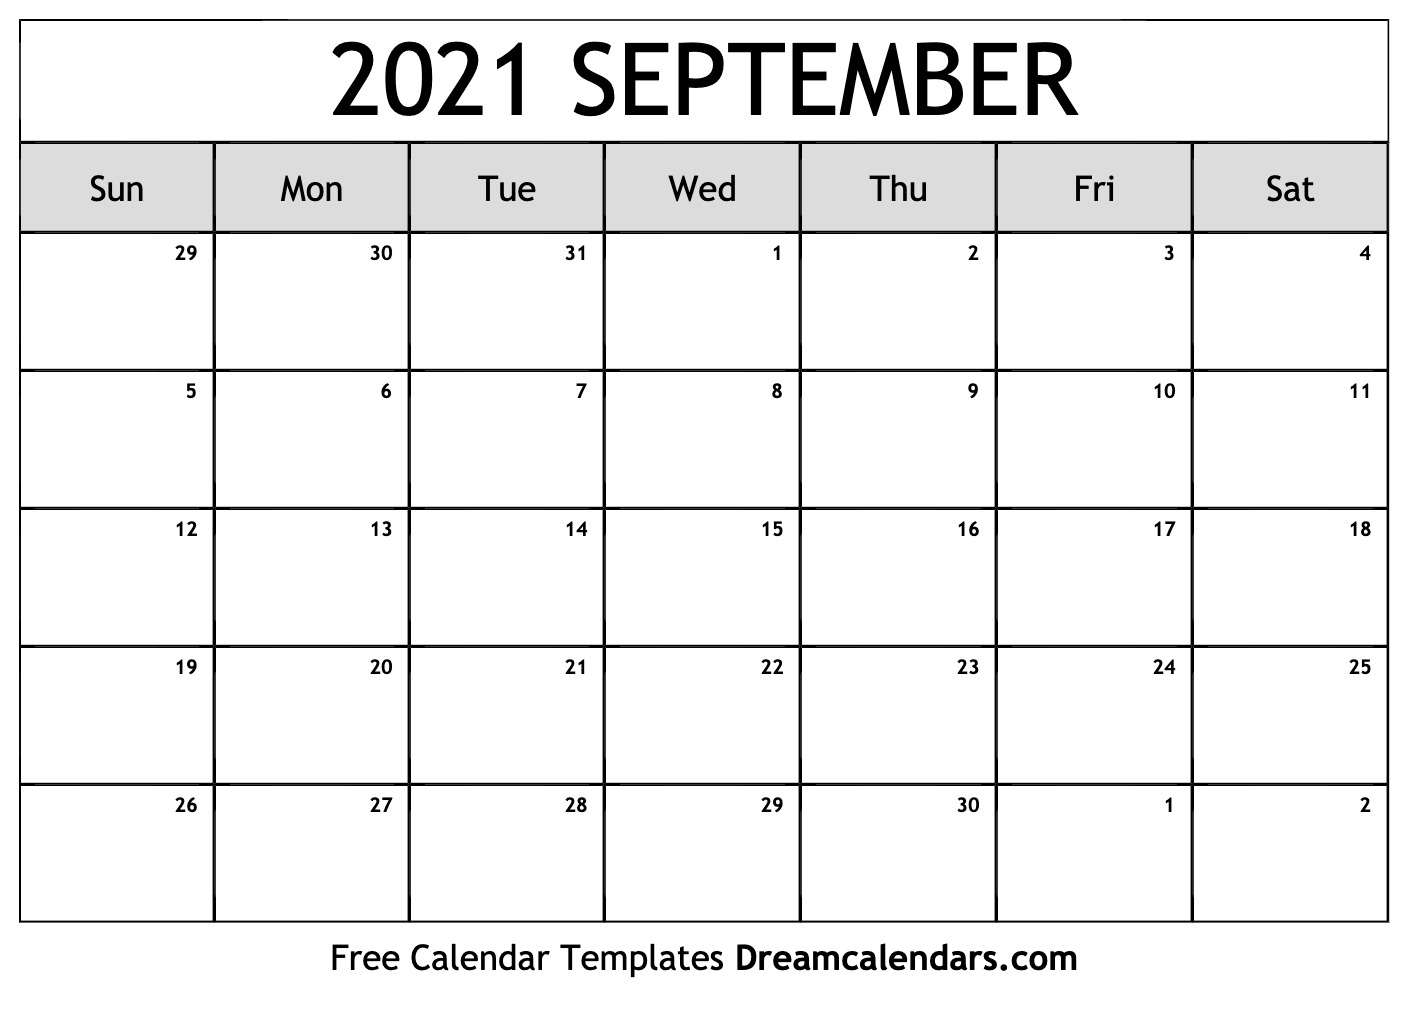 2021 september calendar free theheer com